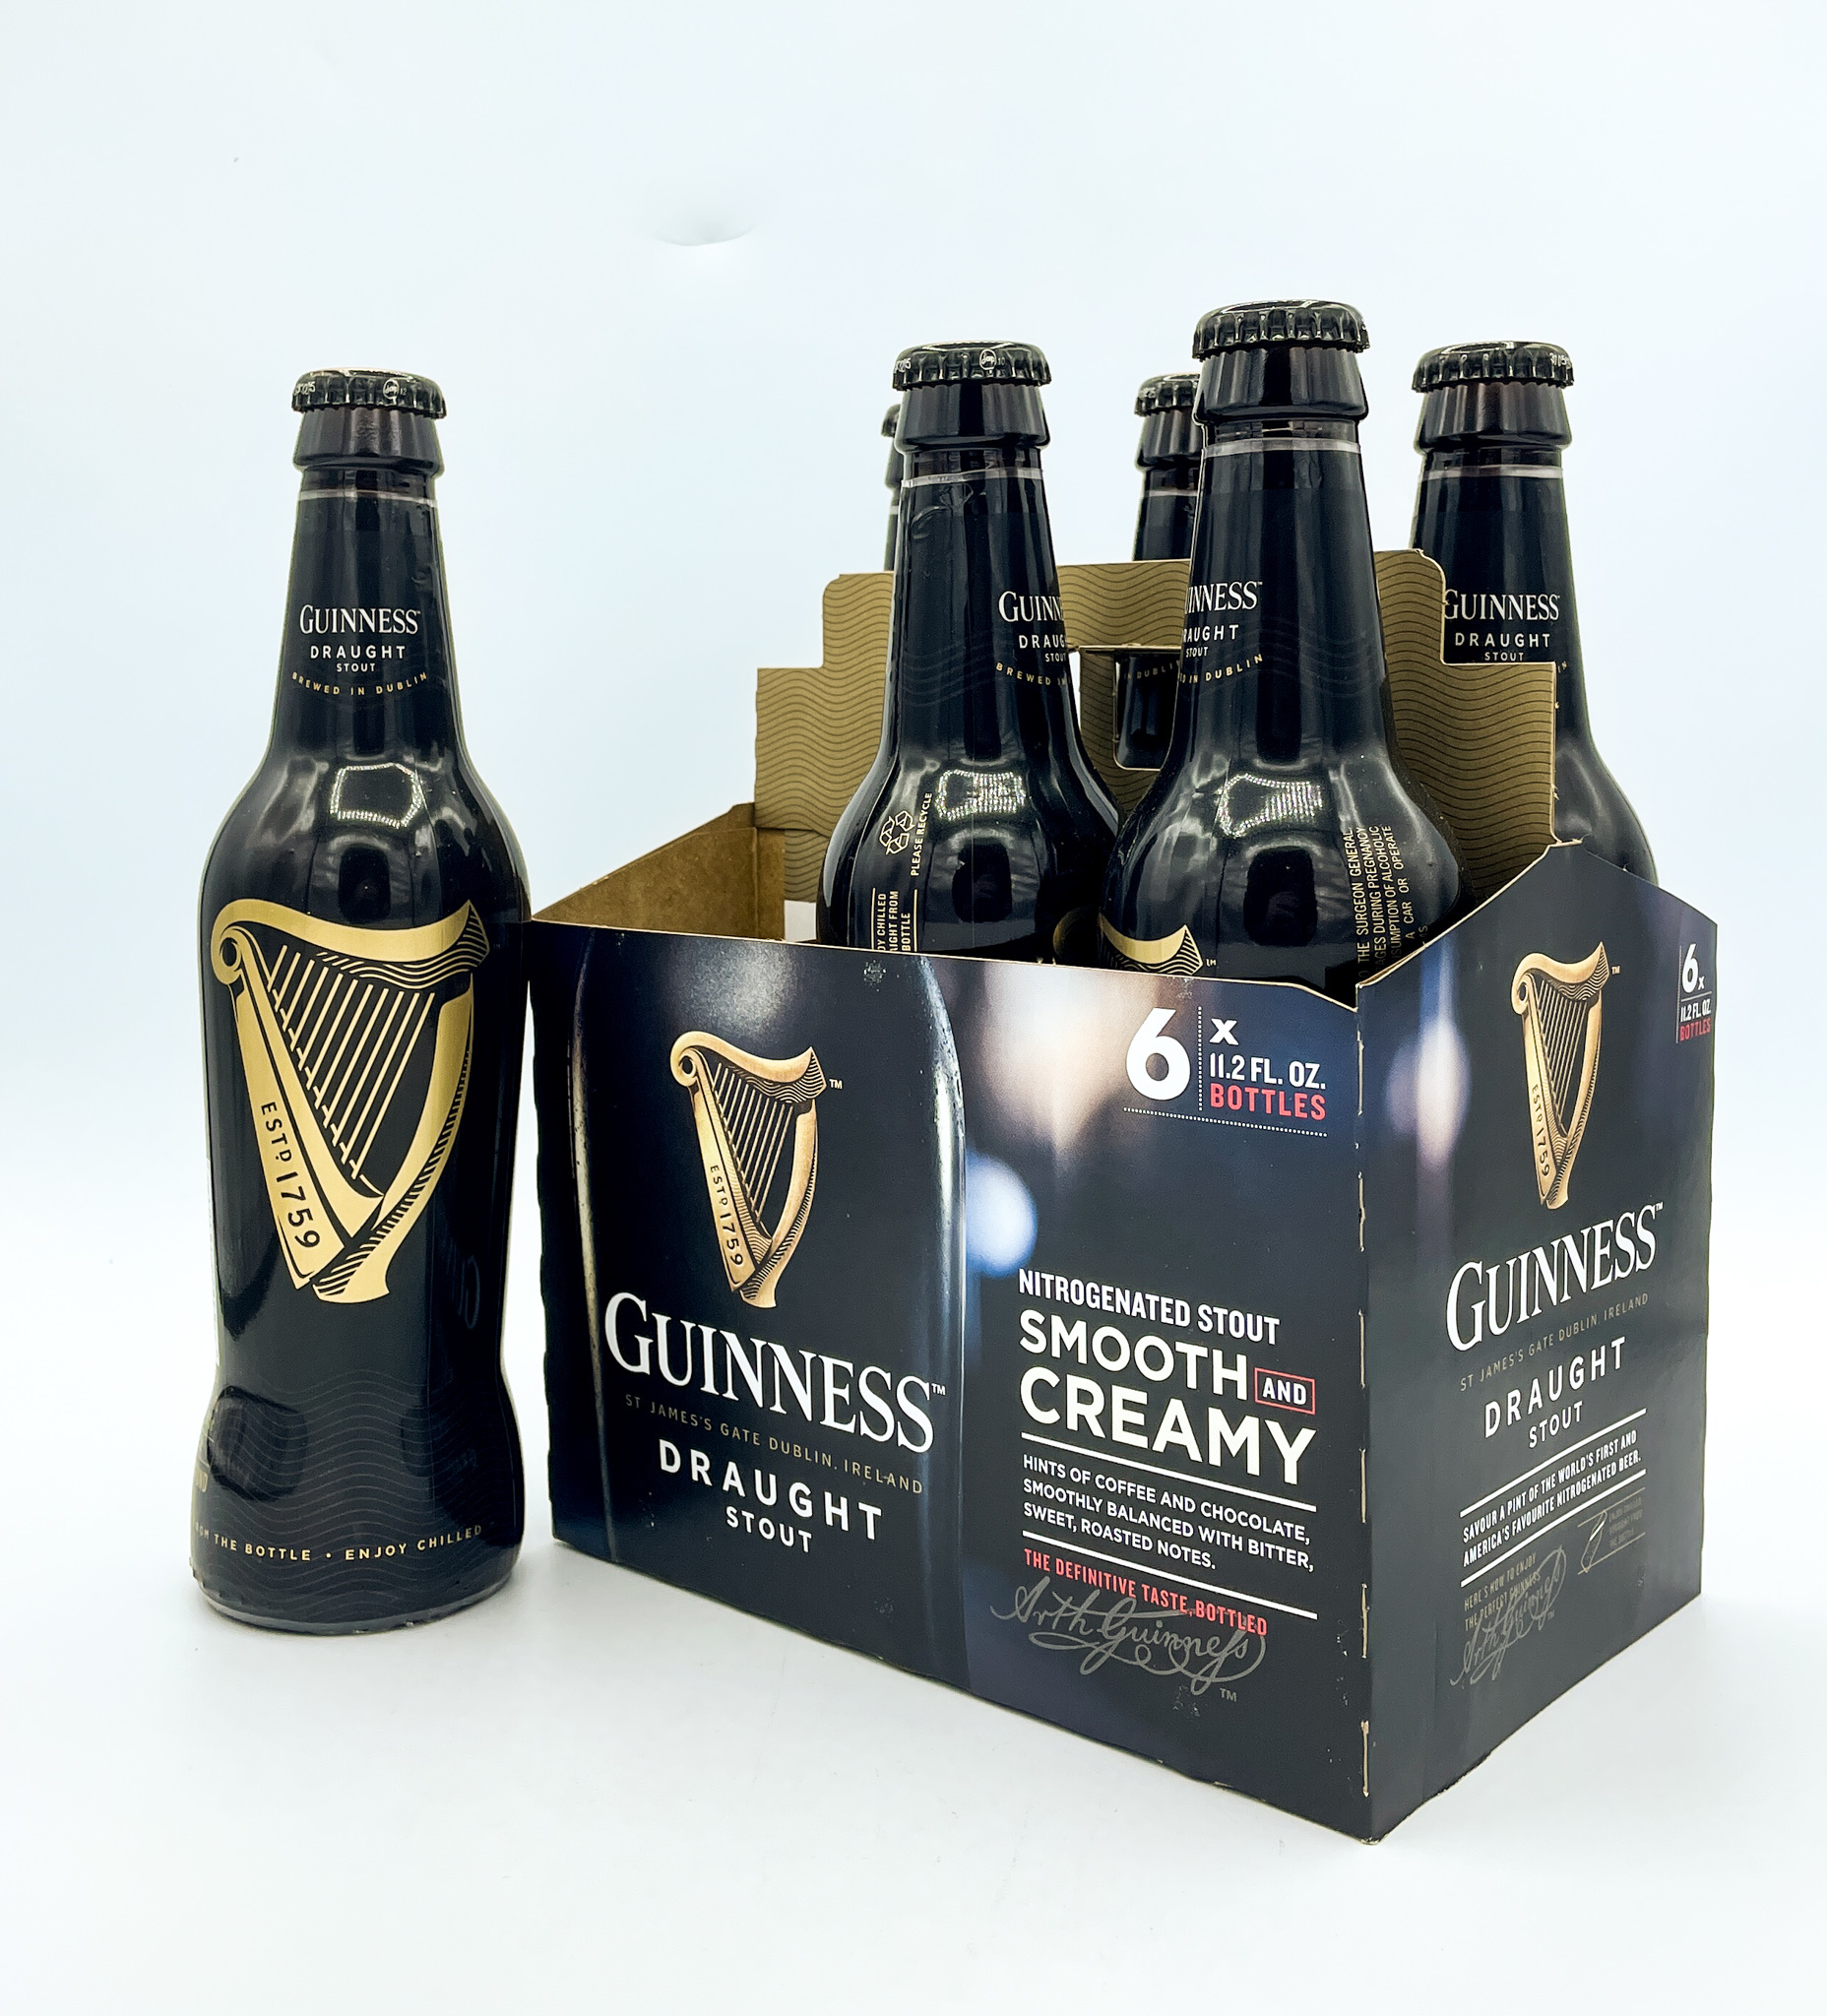 Guinness™ Draught Stout Beer, 6 bottles / 11.2 fl oz - Kroger